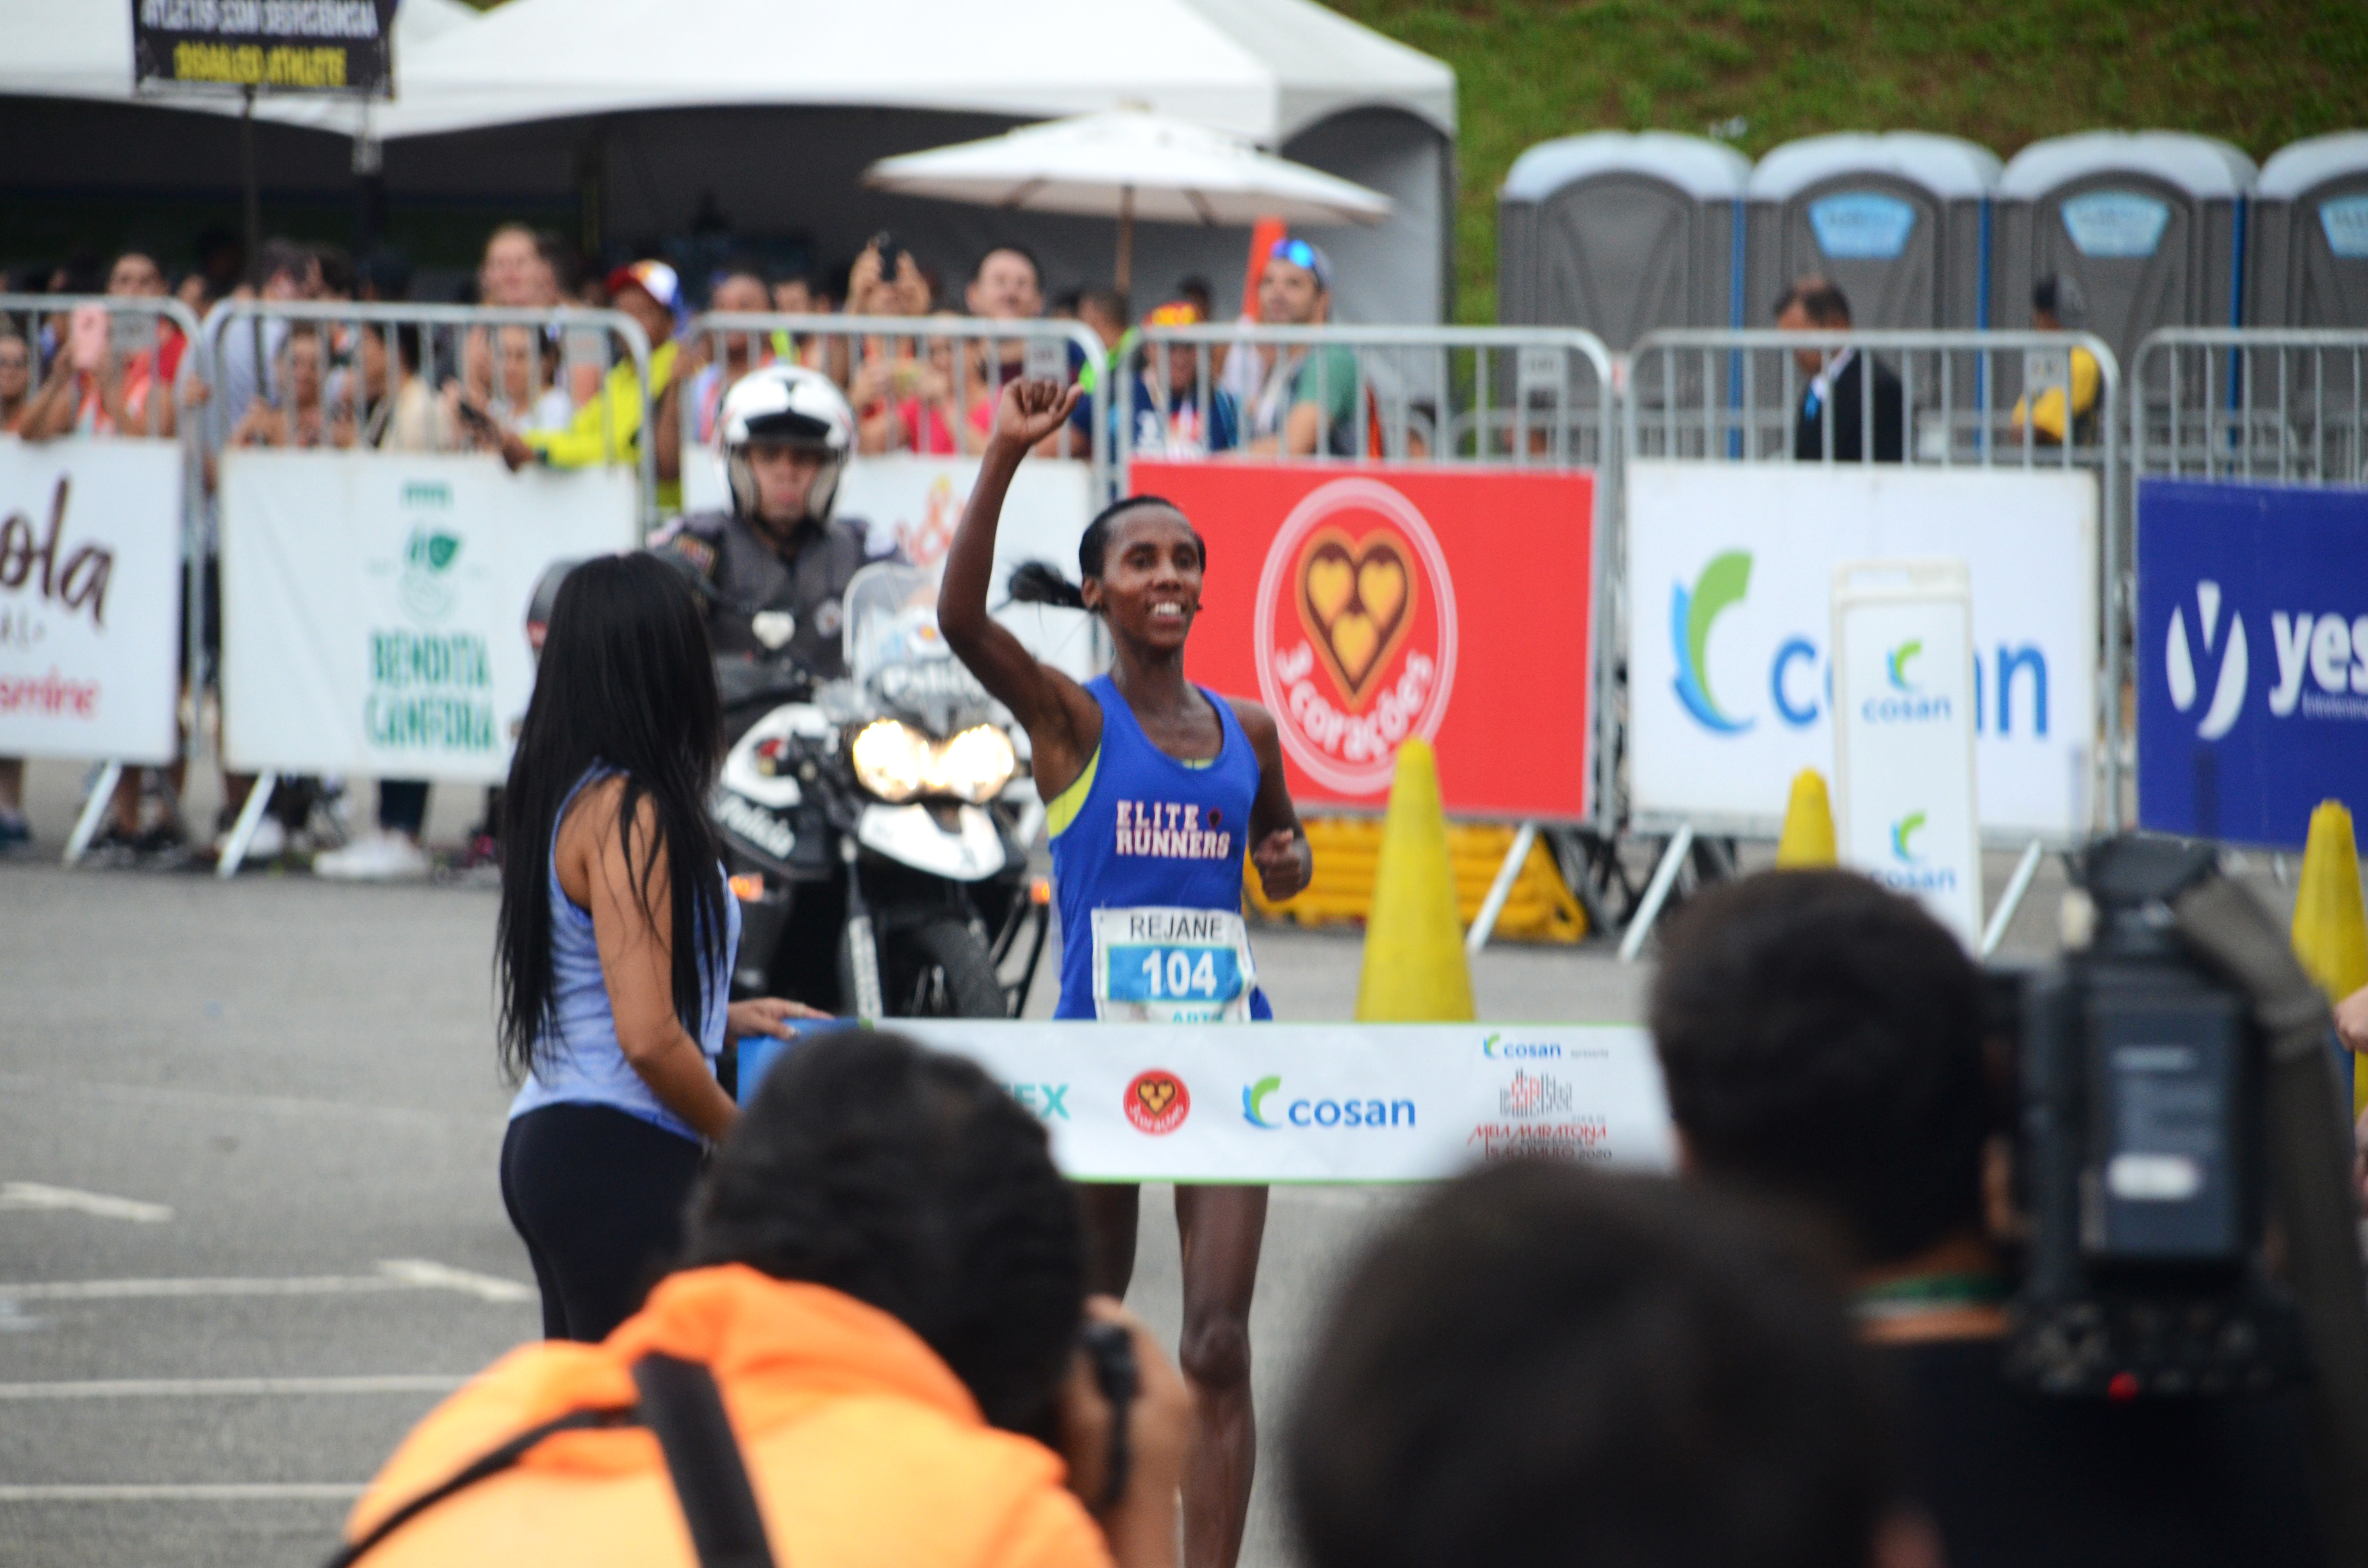 Rejane Ester da Silva, segunda colocada da Meia Maratona Internacional de São paulo no momento da sua chegada, com o punho direito cerrado no alto.